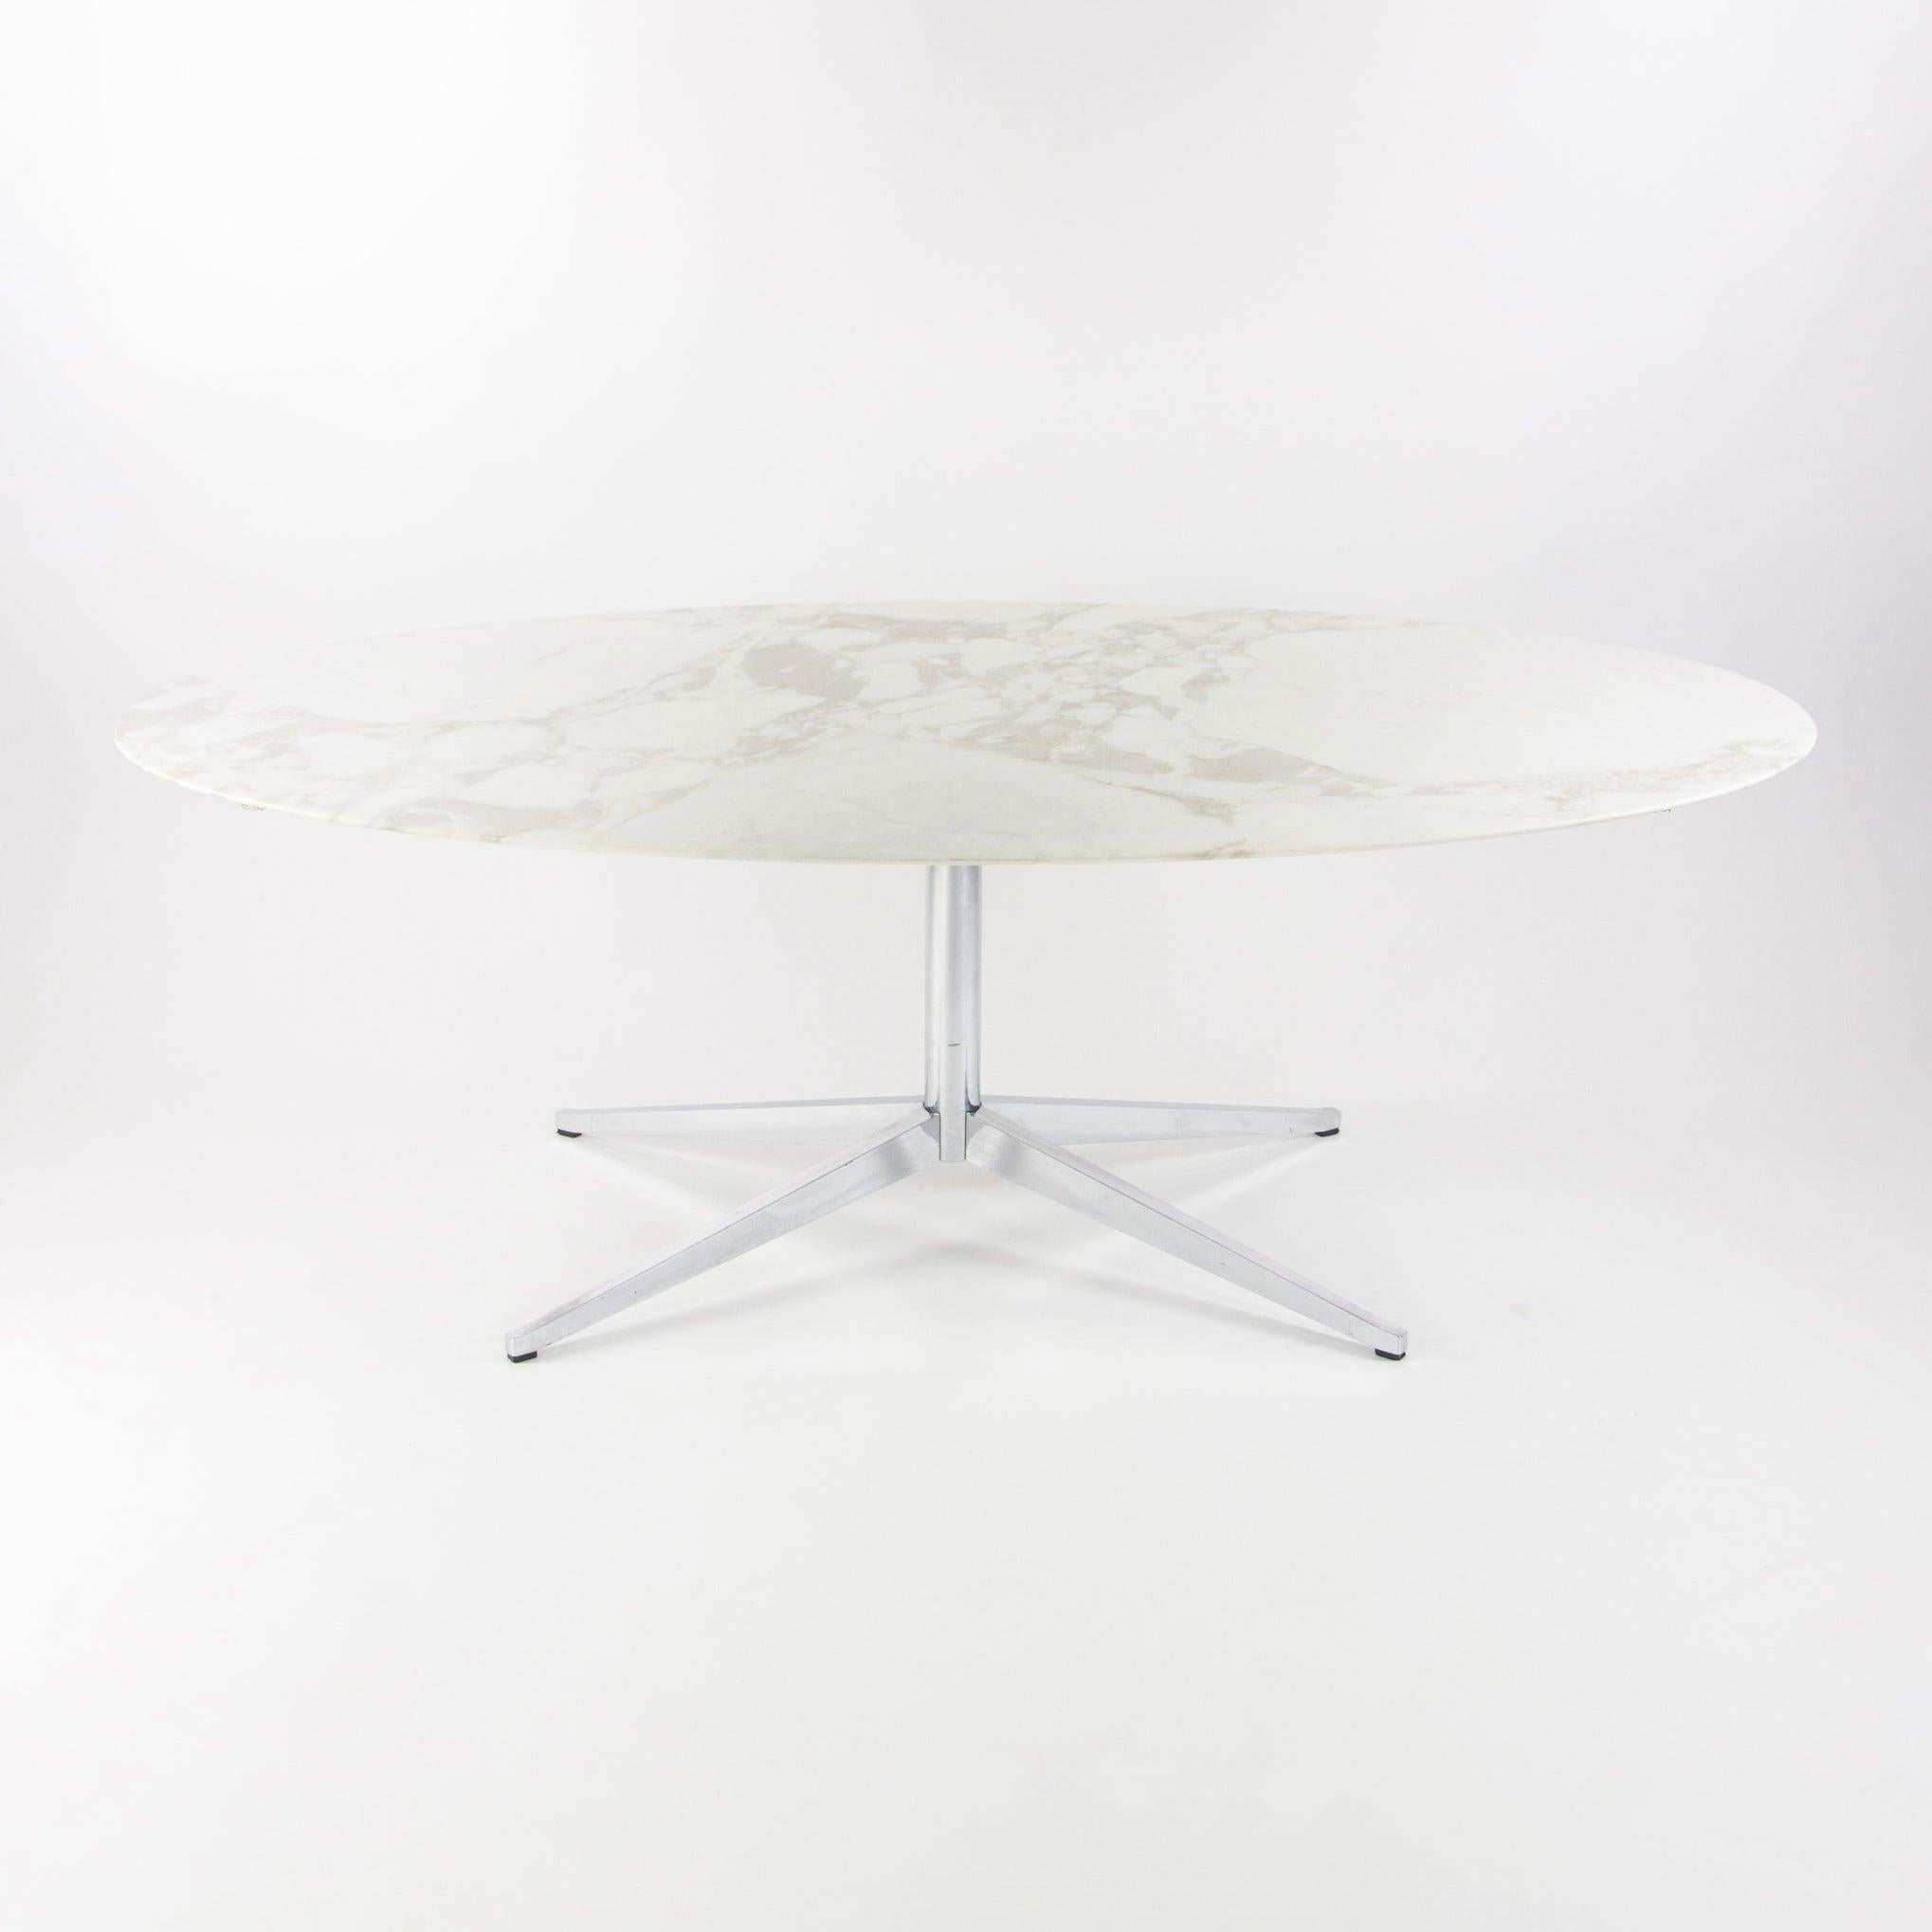 Il s'agit d'une table de salle à manger / table de conférence en marbre Florence Knoll, produite en 2007. La table a été produite par Condit international et est en très bon état. Le plateau présente une légère usure normale et a été utilisé comme